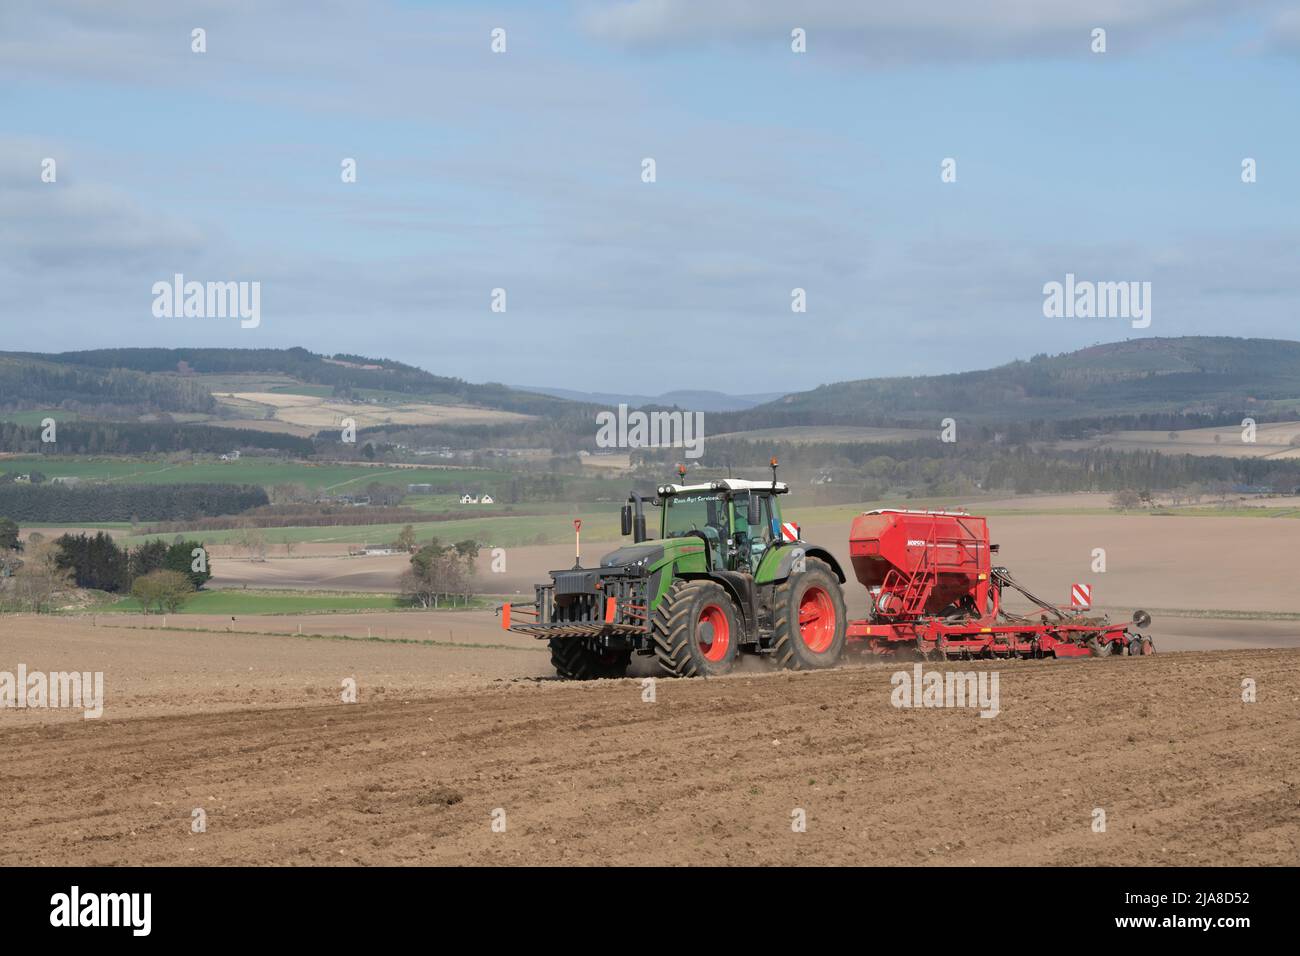 Eine landschaftlich reizende Agrarlandschaft in Aberdeenshire, mit einem Traktor- und Saatbohrer, der in einem gepflügten Feld in Betrieb ist, und Blick über das dahinter liegenden Farmland Stockfoto